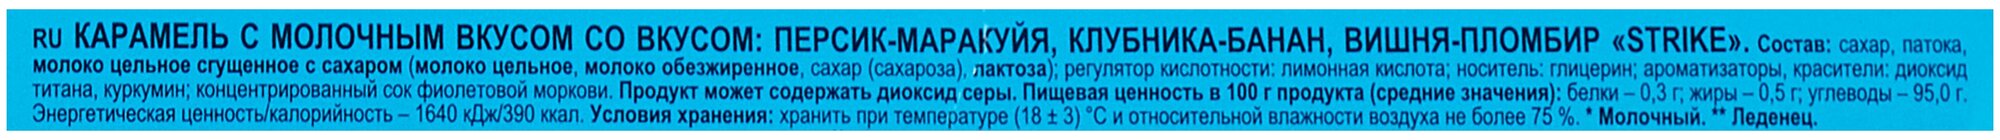 Карамель леденец на палочке Strike / Страйк с молоч. вкусом, 11,3 гр, 50 штук